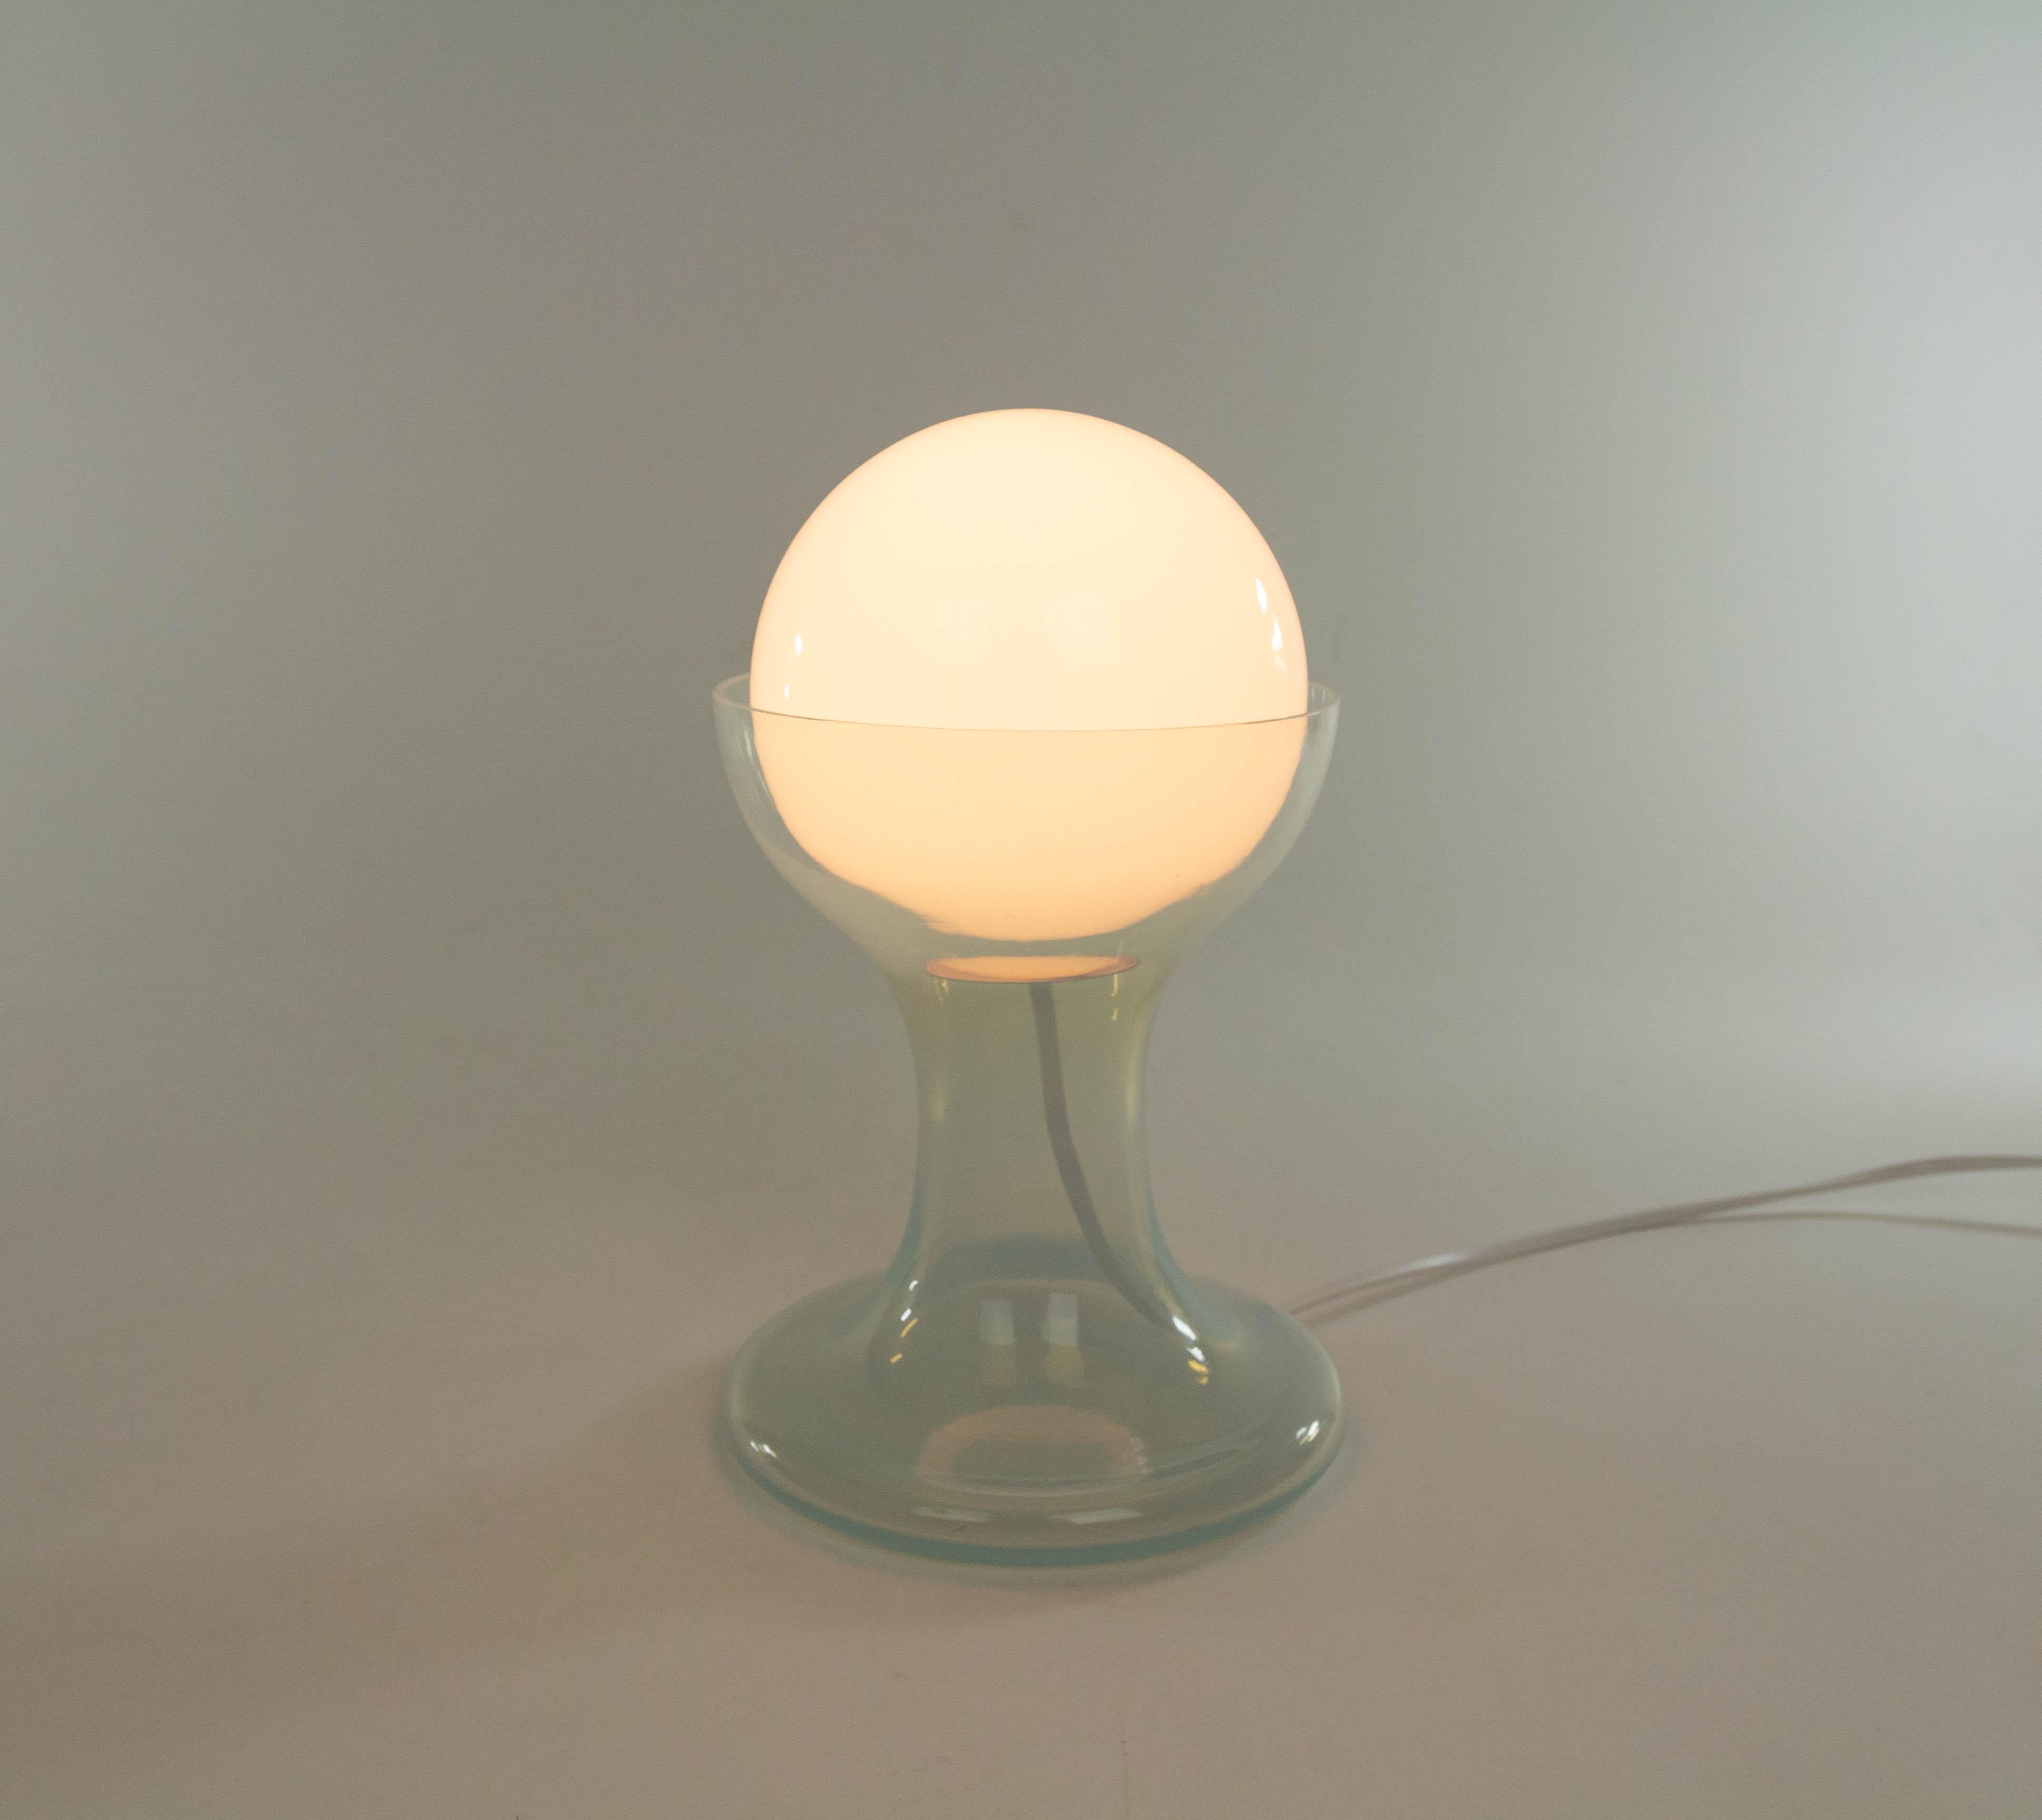 Tischleuchte LT 215, entworfen von Carlo Nason und hergestellt in den 1960er Jahren von der Glasmanufaktur A.V. Murano. Mazzega. Die Lampe besteht aus einer weißen Glaskugel und einem Sockel aus Murano-Glas.

Dieses Modell wurde in zwei Größen